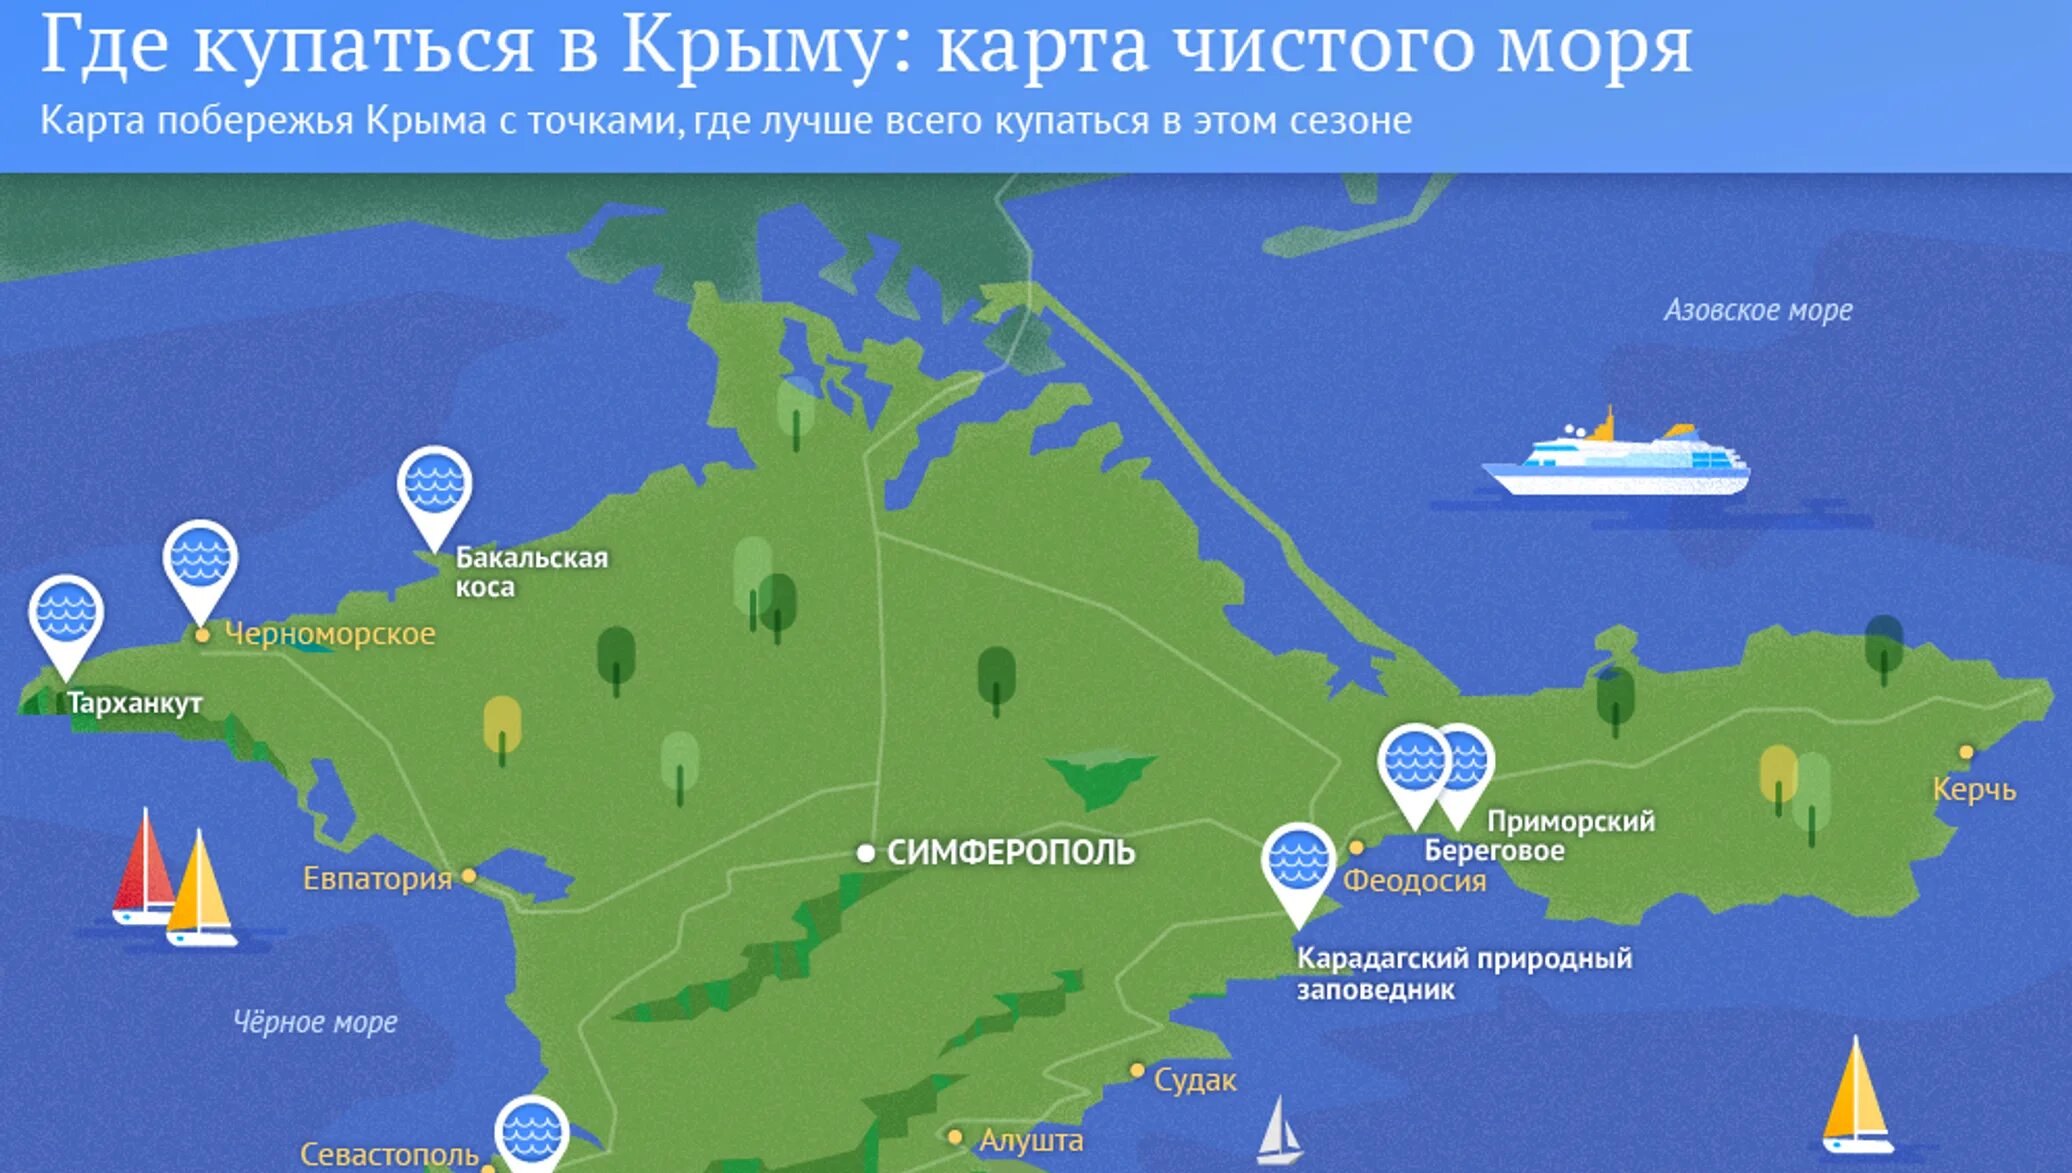 Карта чистоты моря в Крыму. Чистота воды в Крыму на карте. Азовское море курорты. Курортные зоны Крыма.